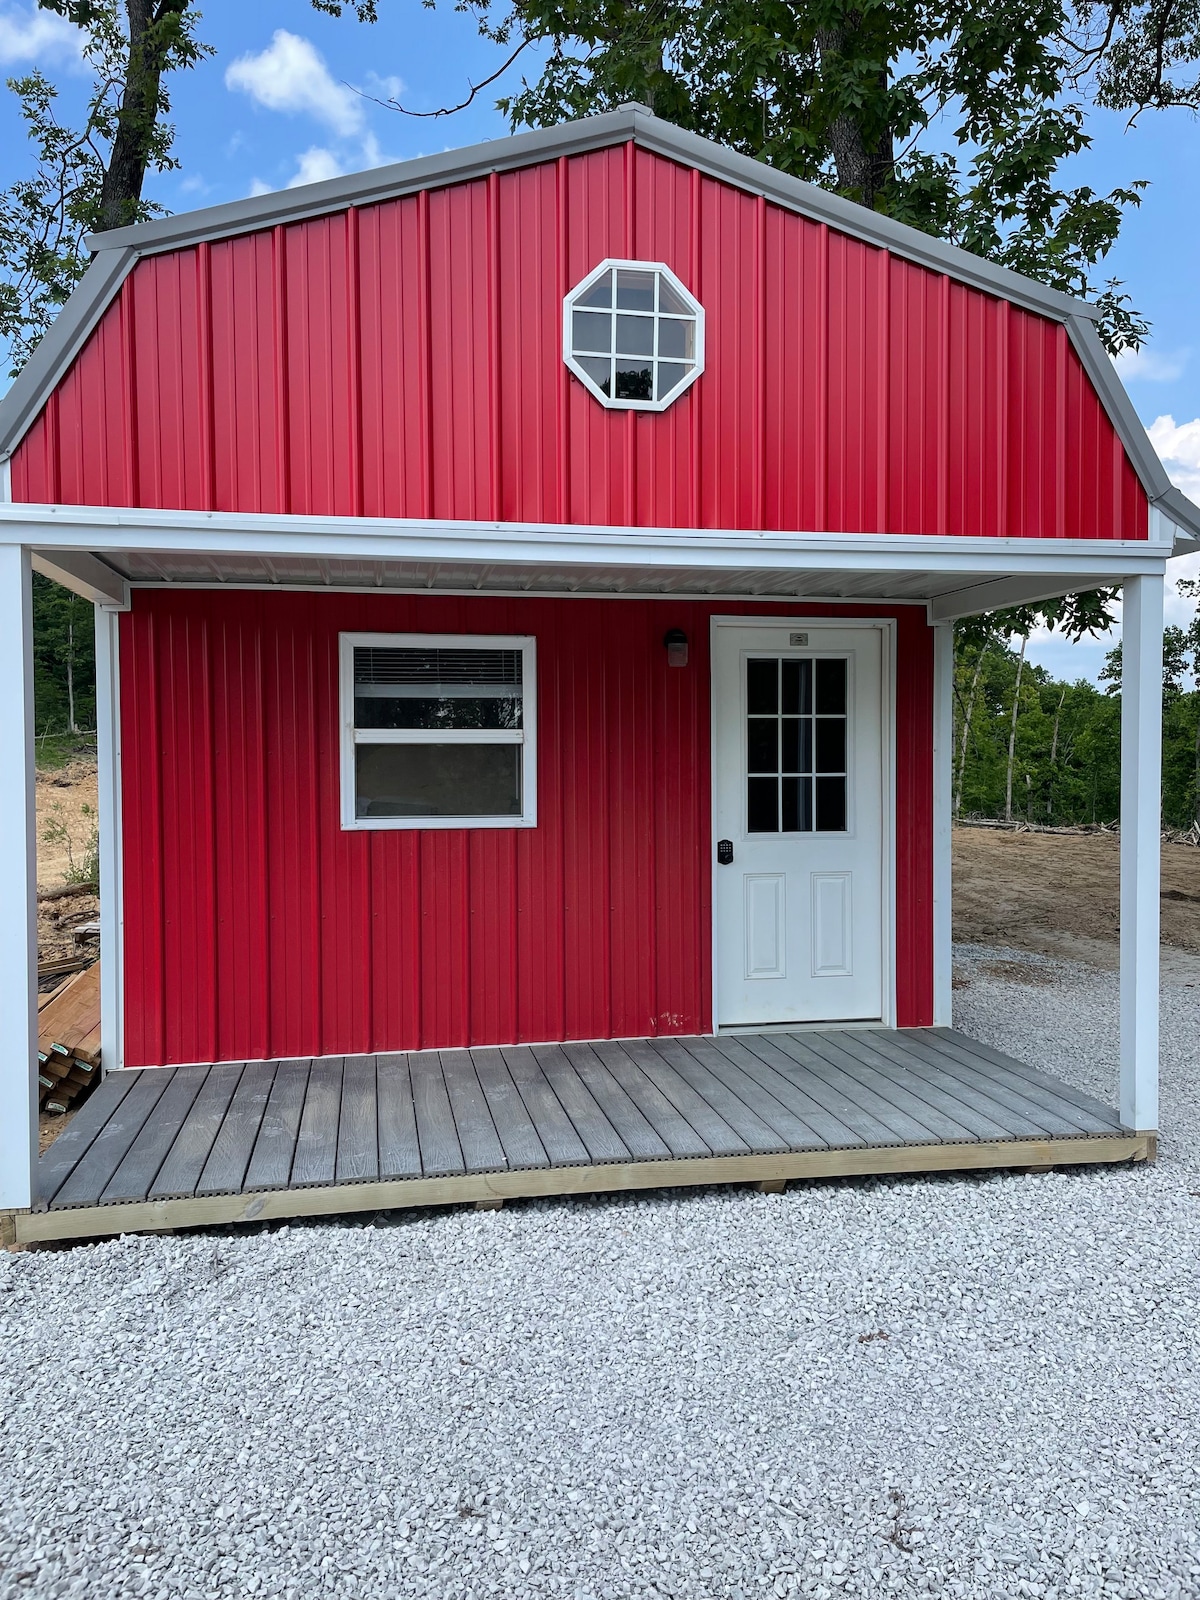 （红色）小木屋1张全尺寸床、2个阁楼、2张充气床垫